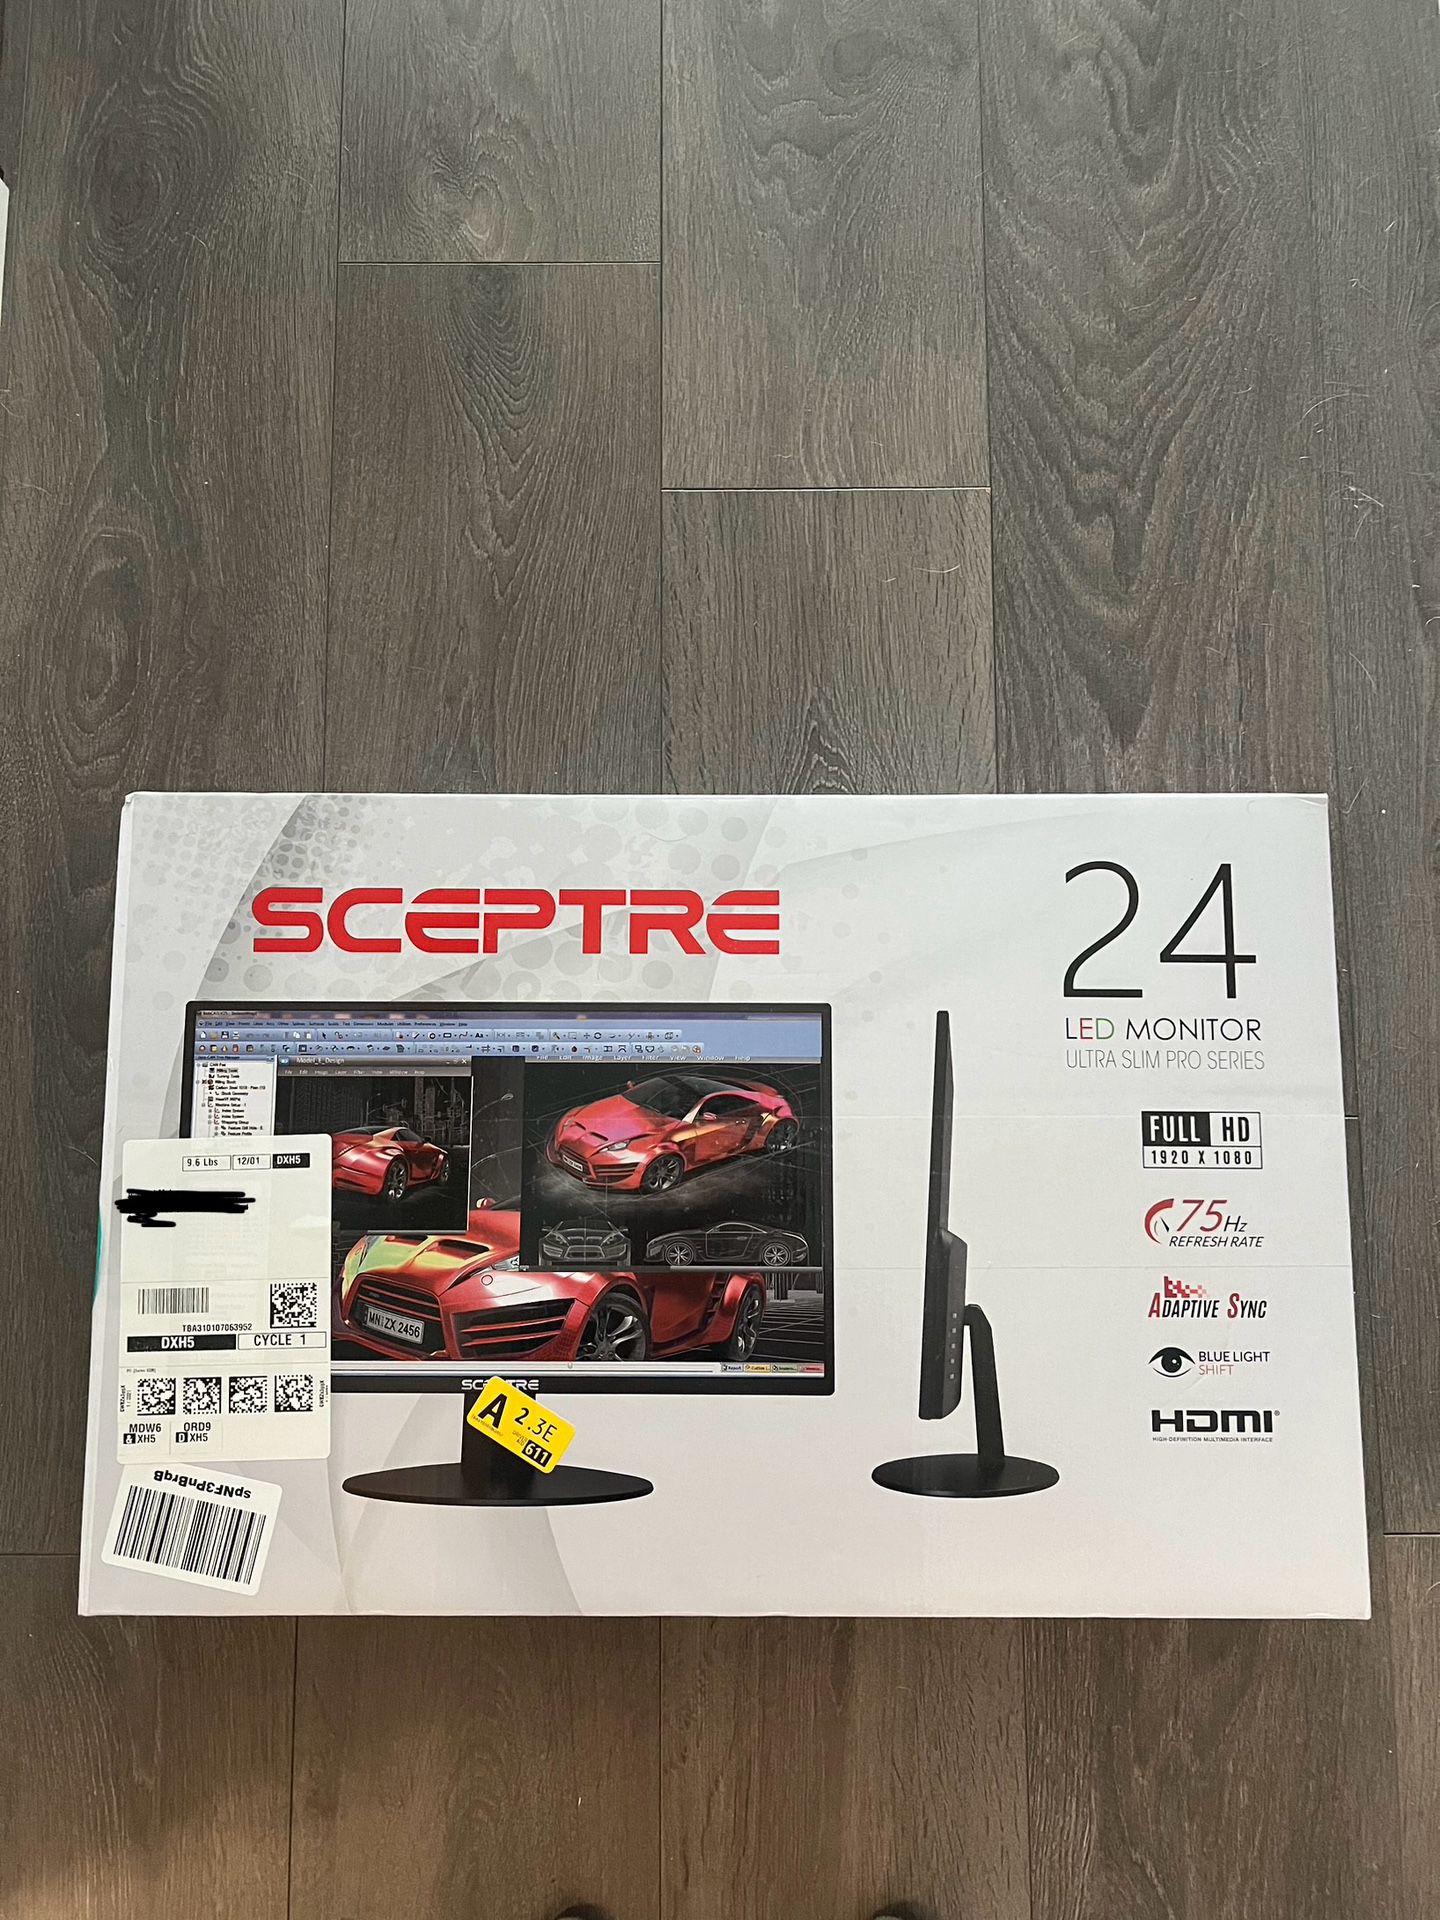 BRAND NEW Sceptre 24” monitor